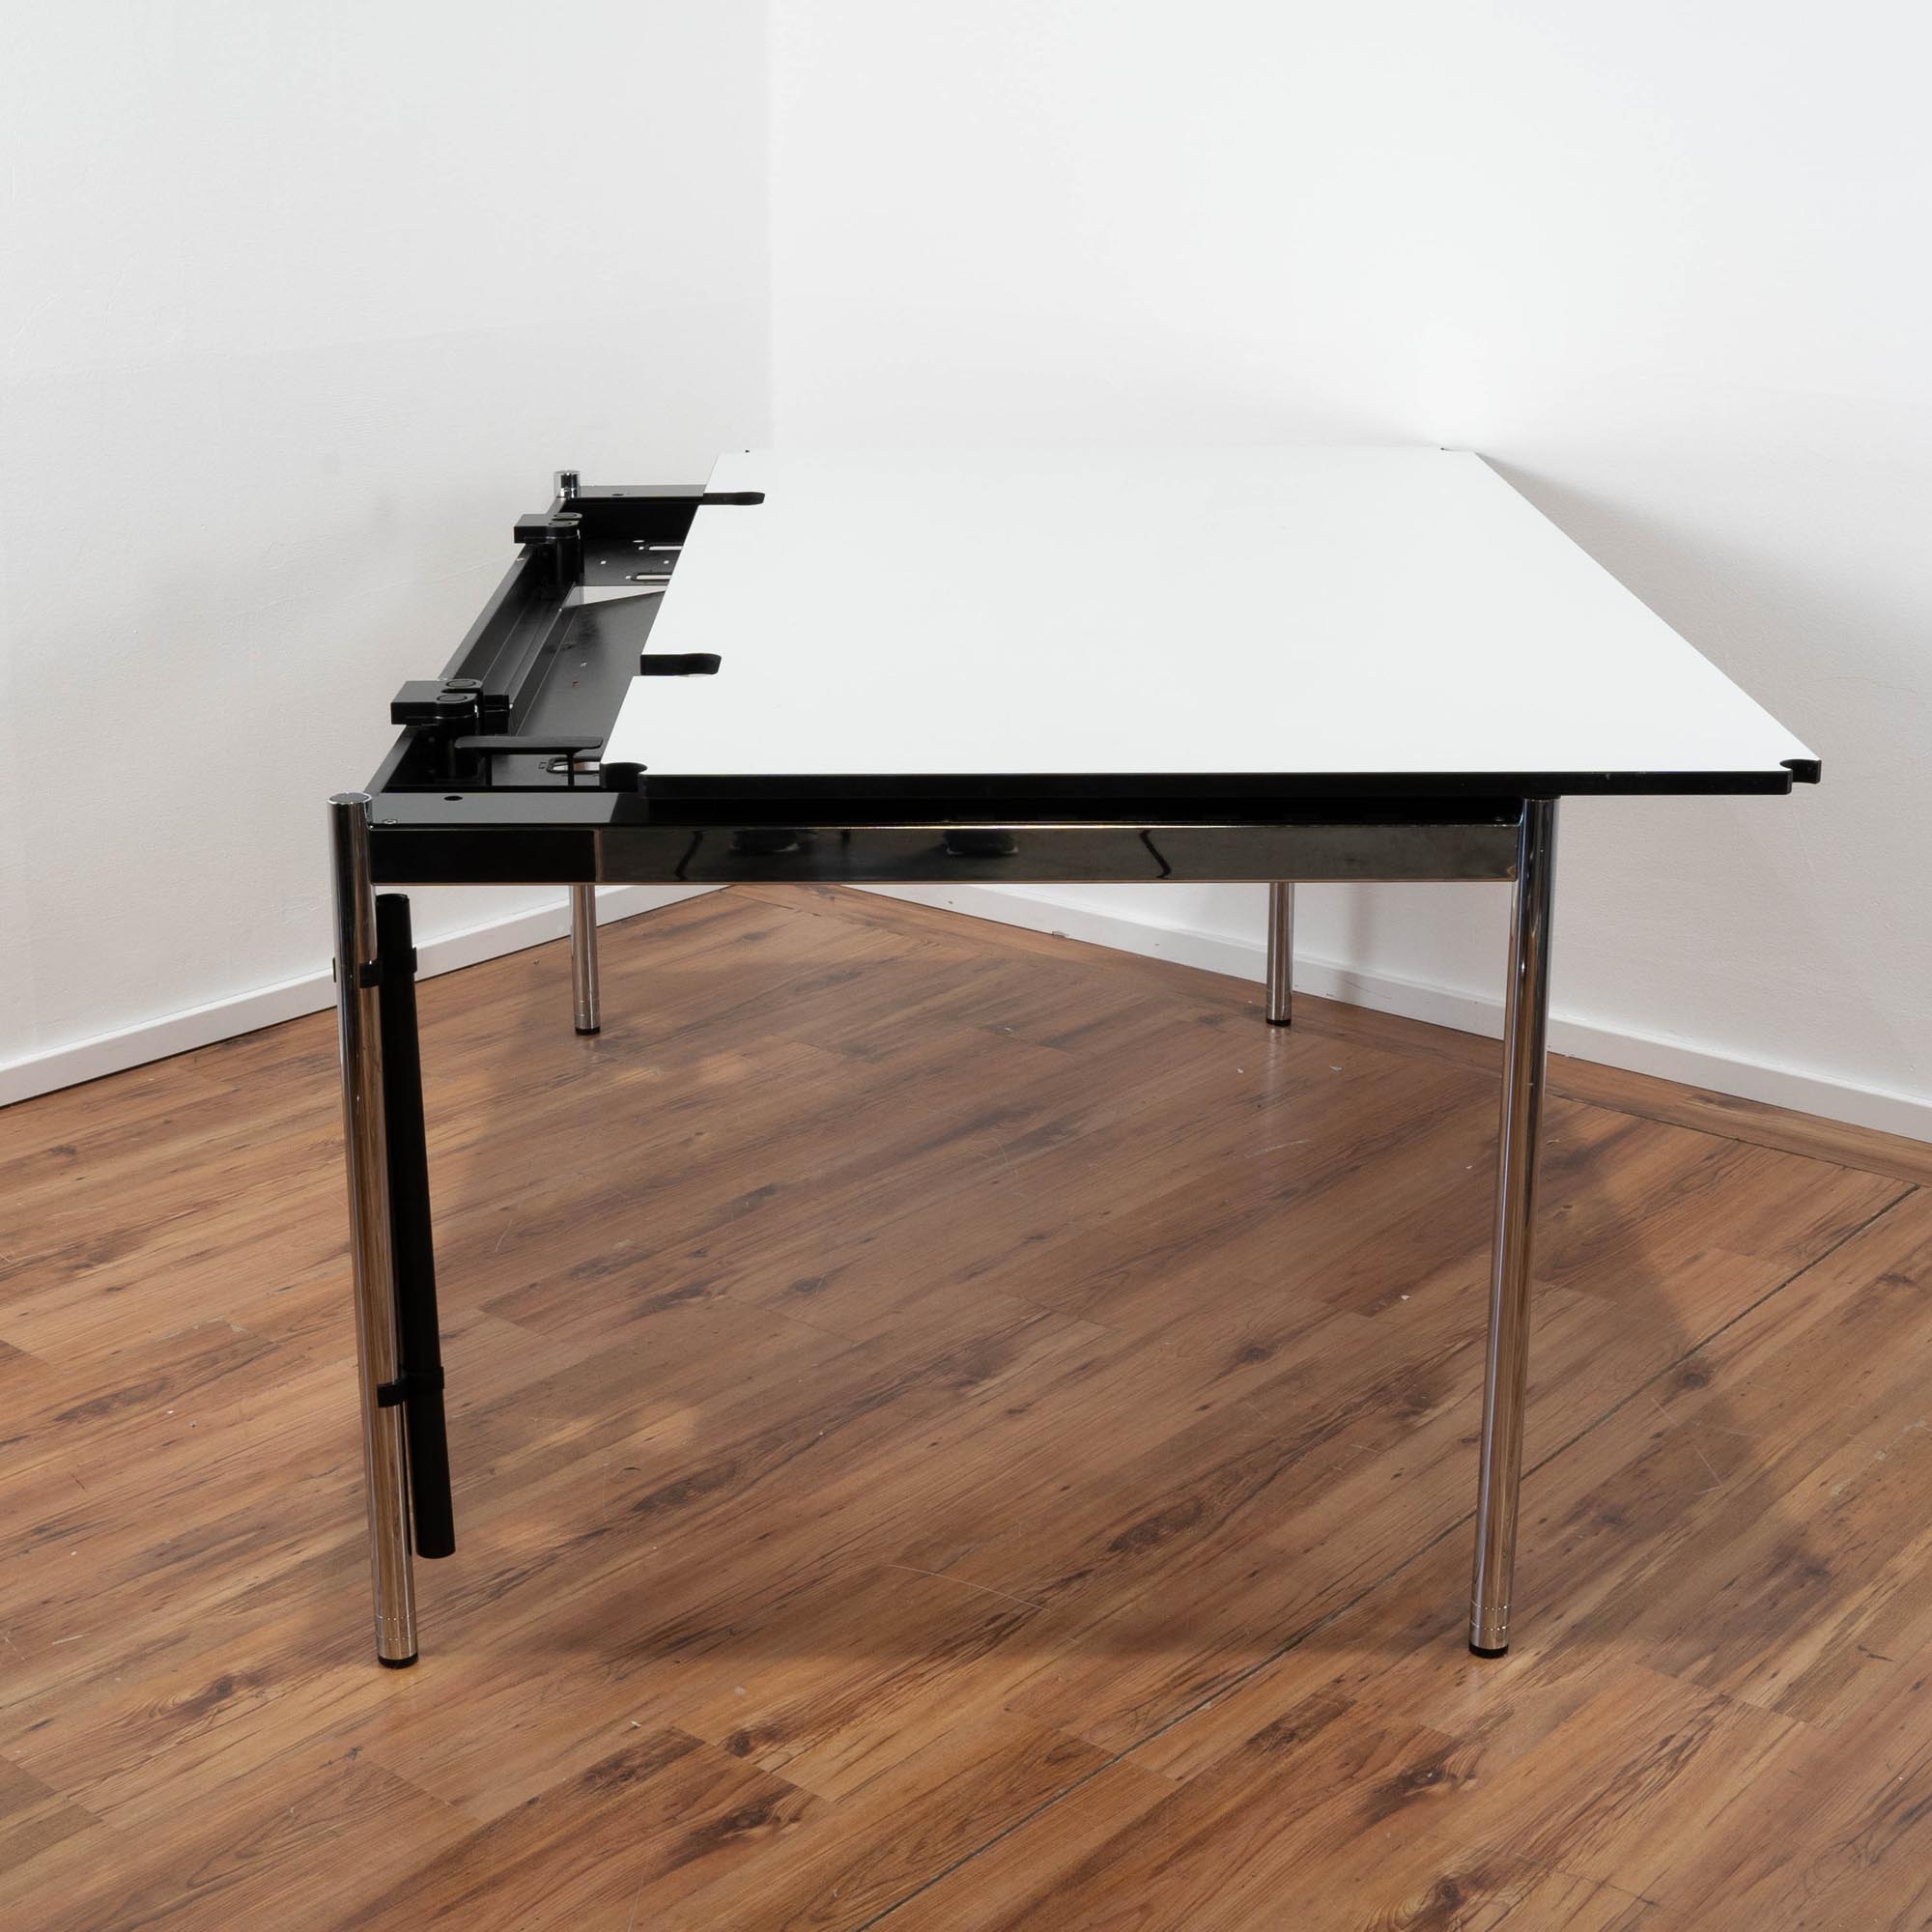 USM Haller Schreibtisch "Advanced" weiß - 200 x 100 cm - Gestell Chrom - Tischplatte ausziehbar 